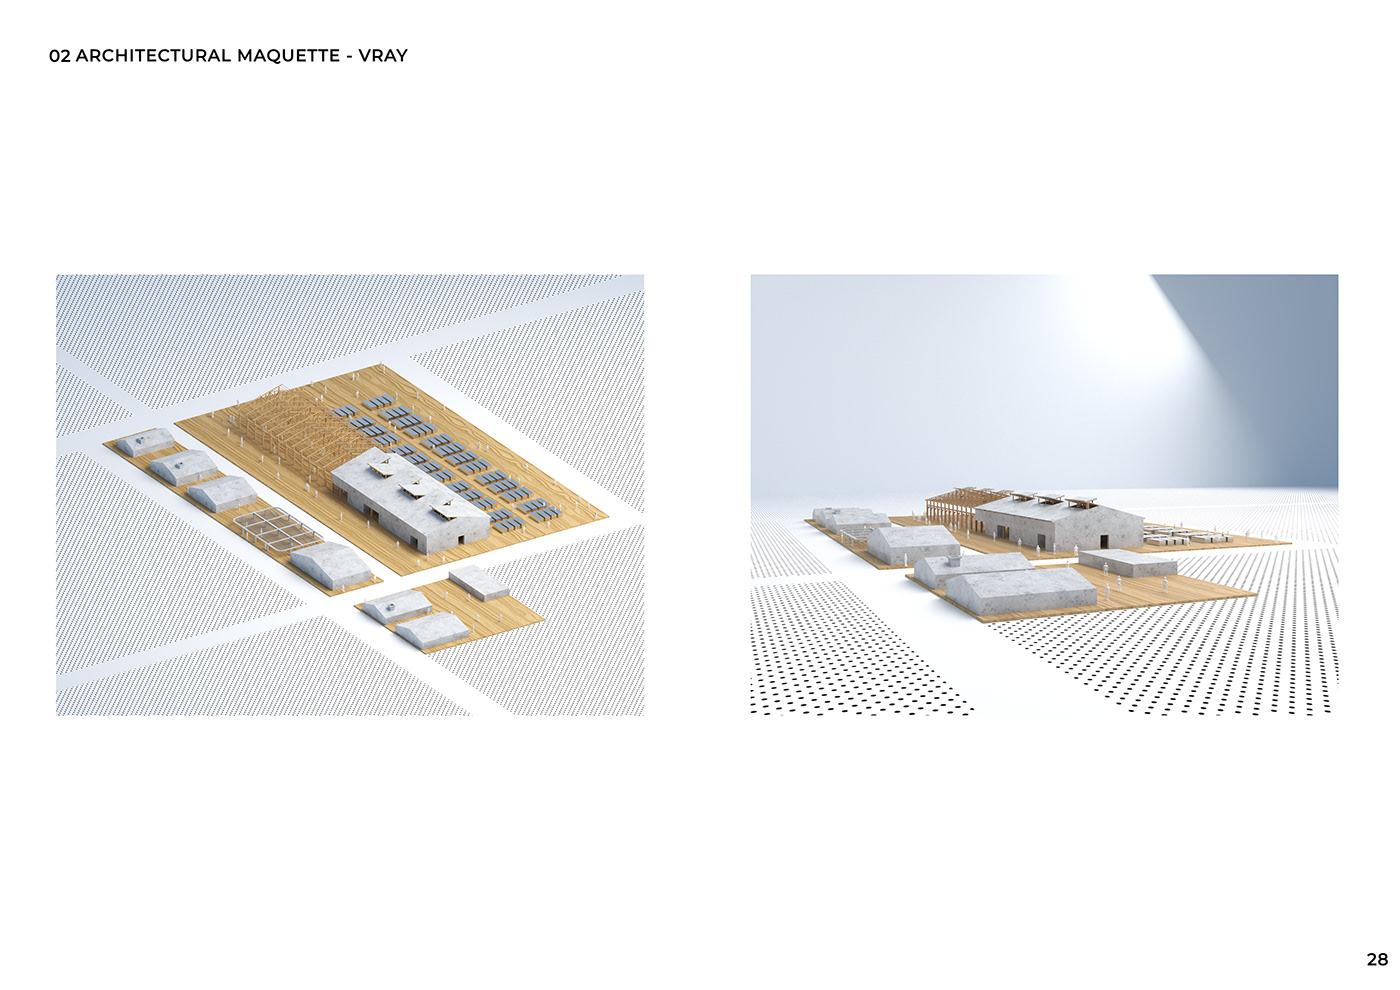 sketch digital illustration concept art architecture archviz Render vray exterior enscape SketchUP